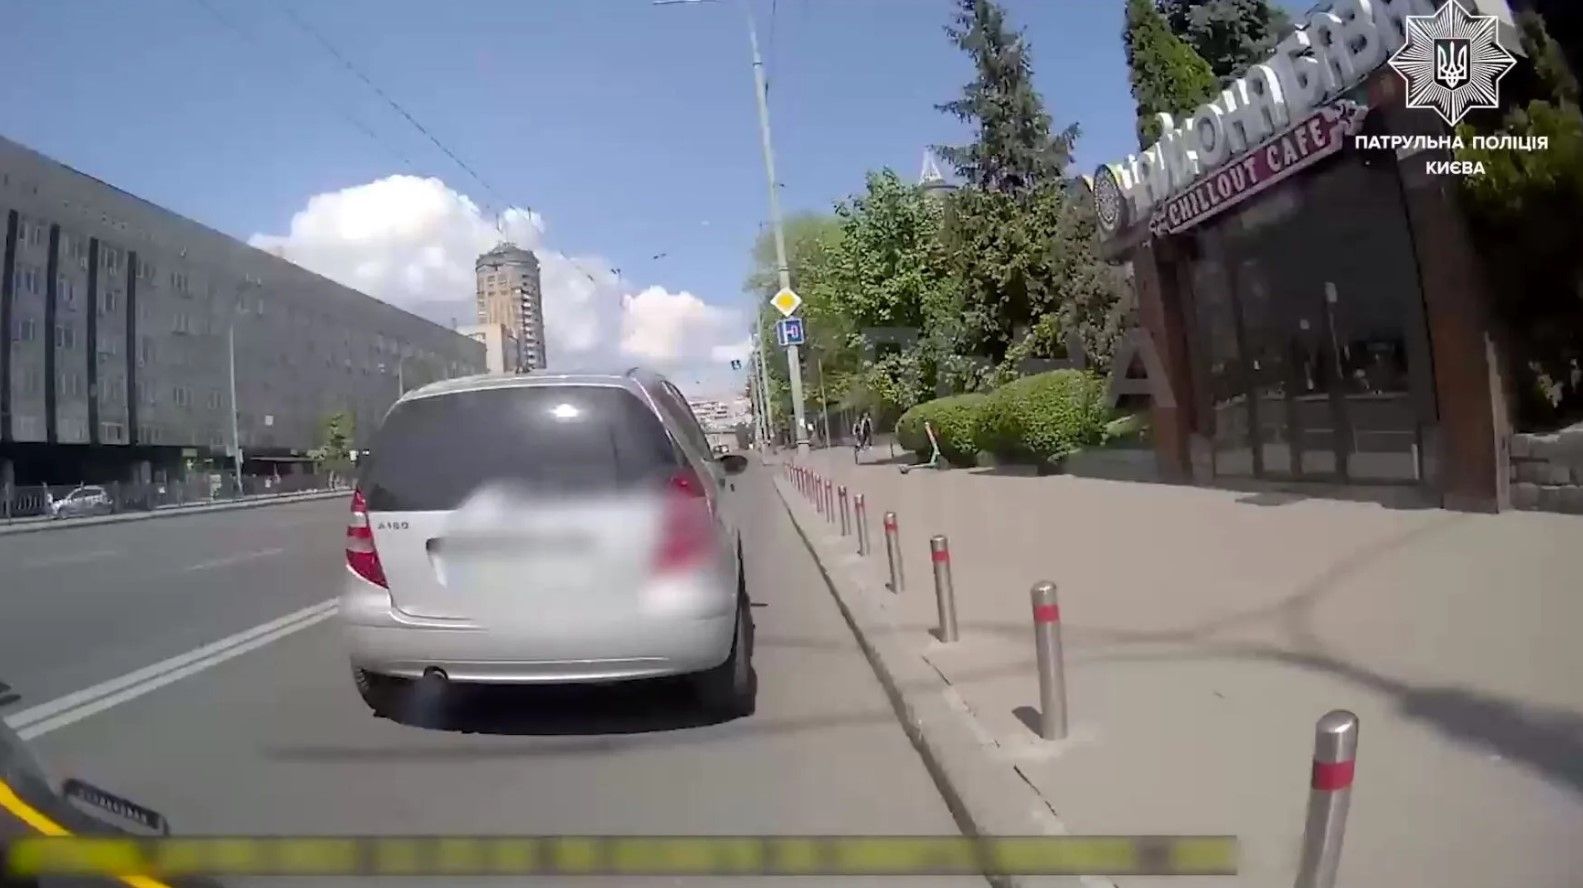 Песелидирование в Киеве – водитель хотел убежать от полиции